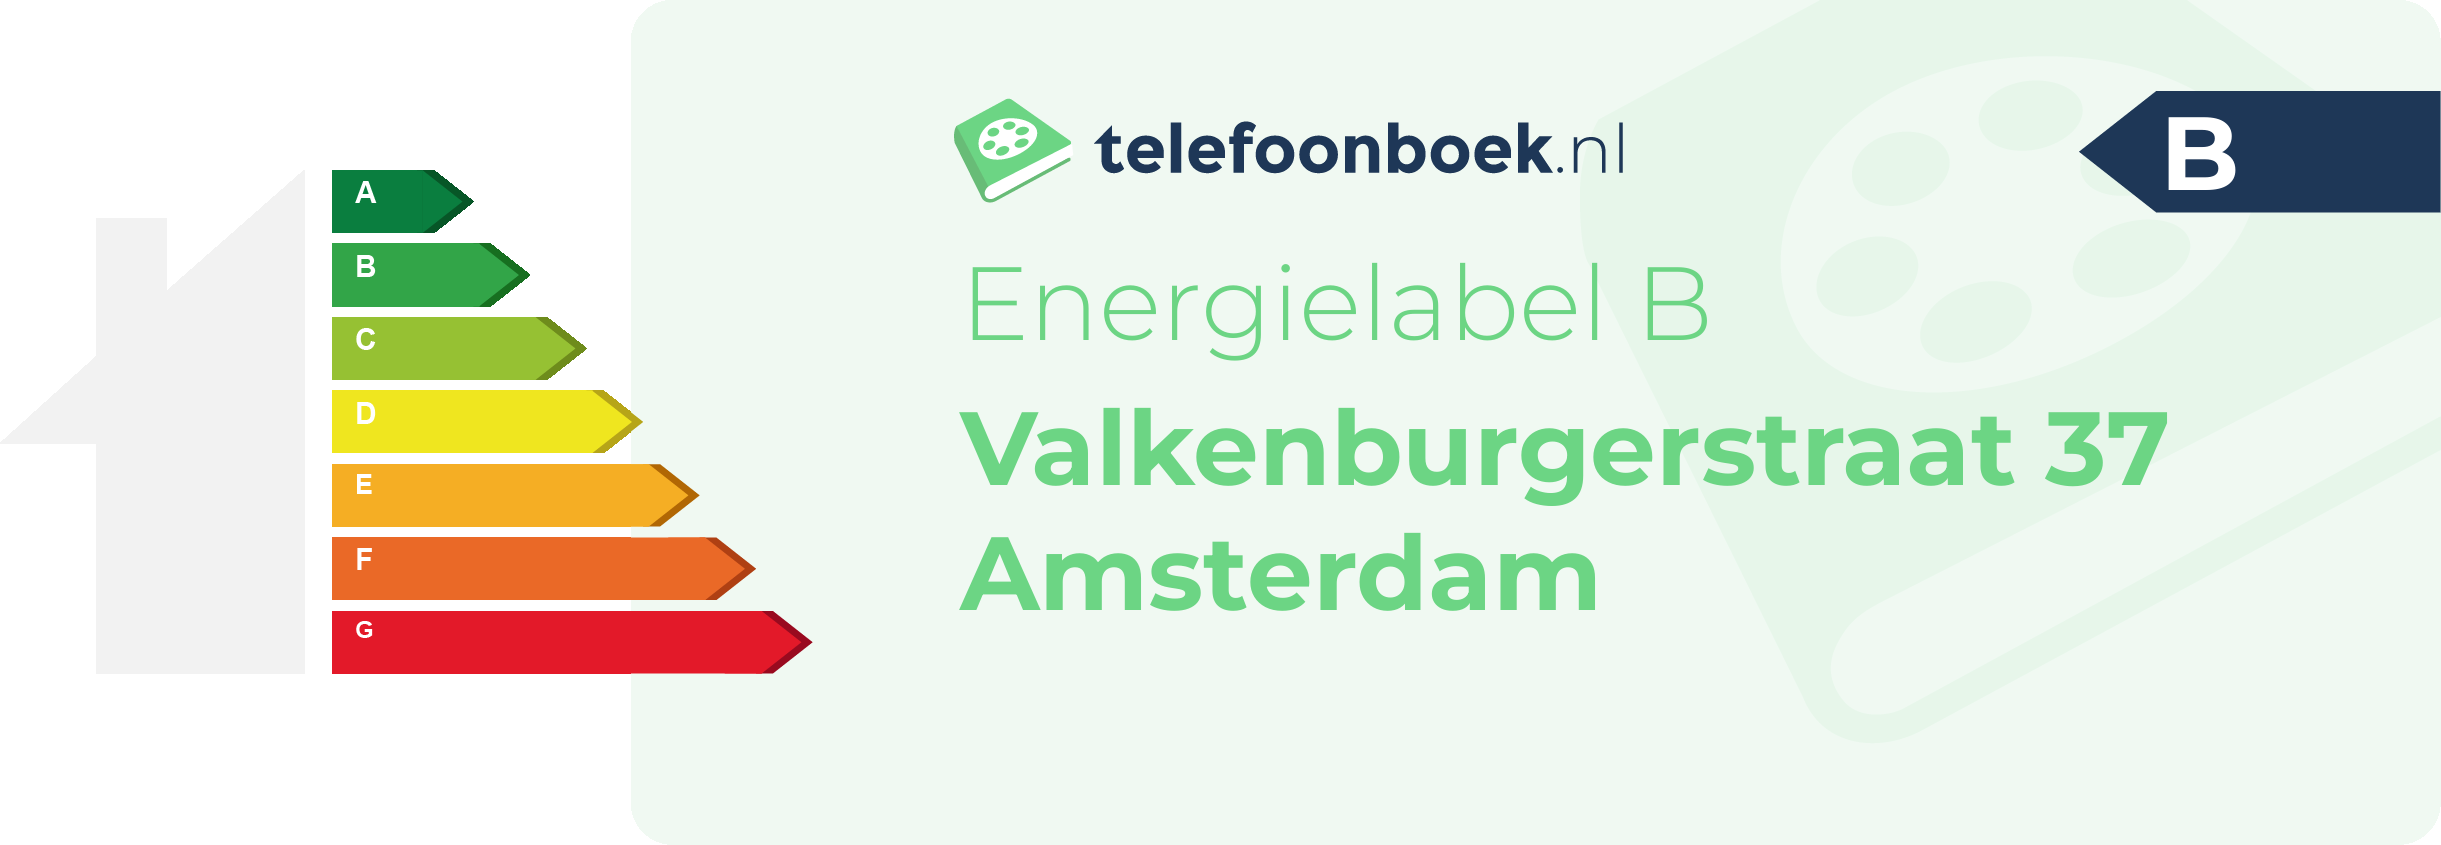 Energielabel Valkenburgerstraat 37 Amsterdam